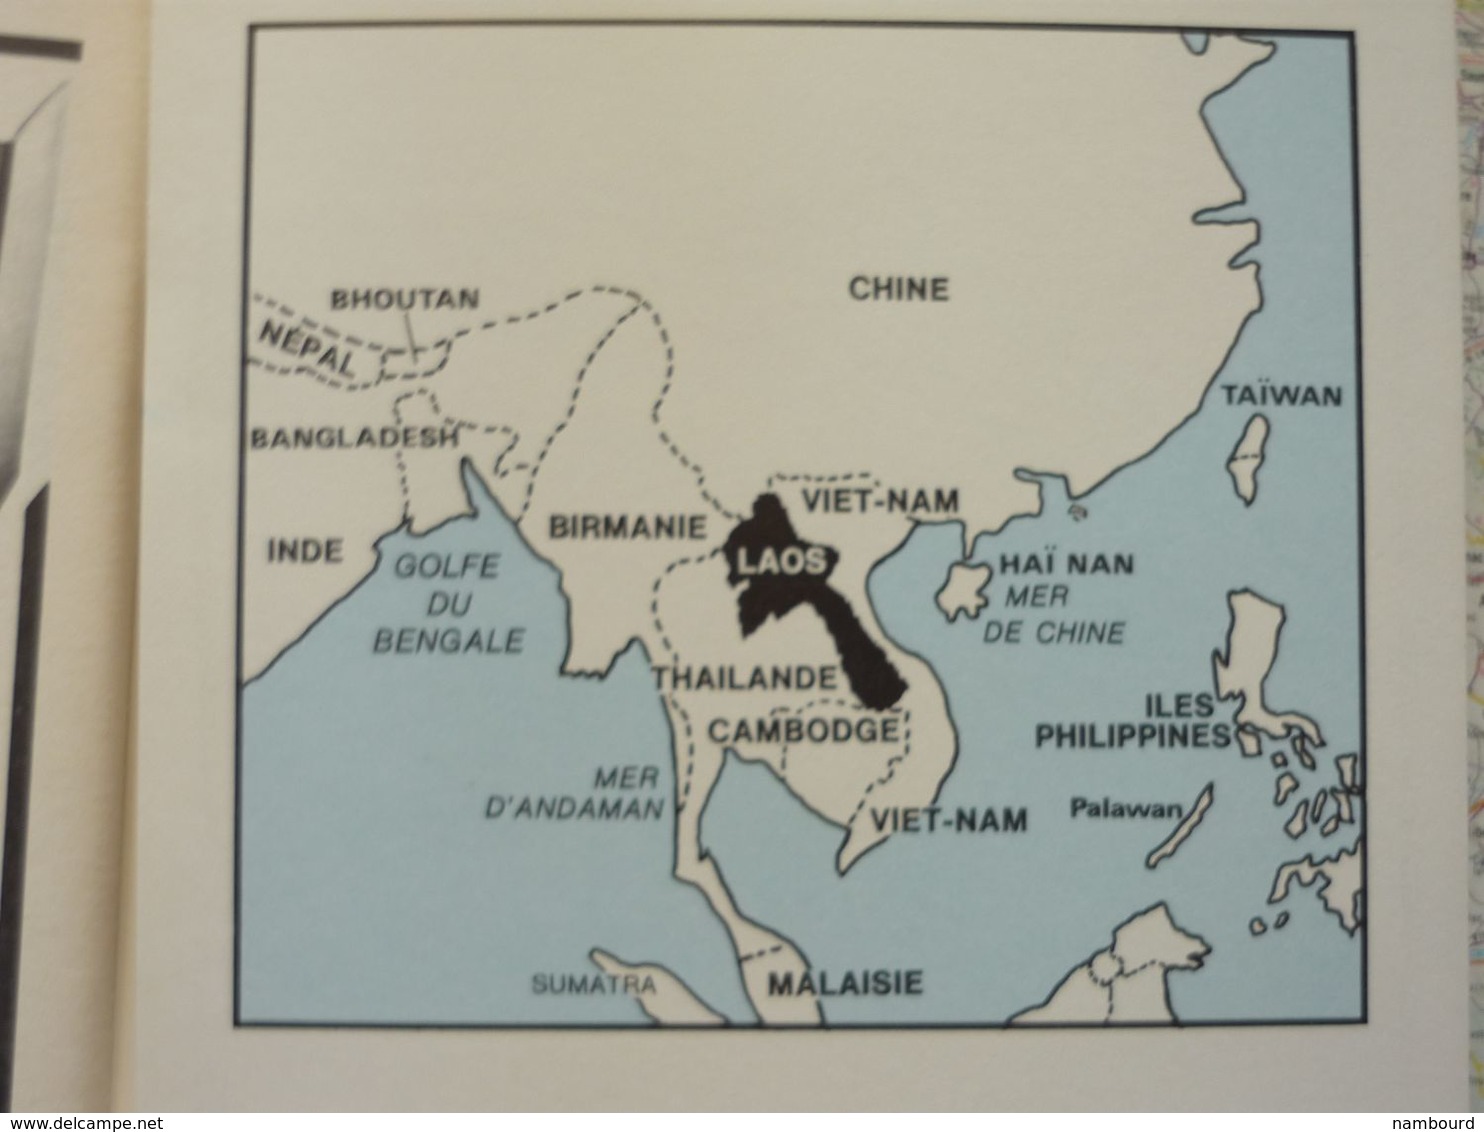 Tour du Monde N°225 République Démocratique Populaire du Laos - Porto Rico - Coutumes bantoues Juin 1978